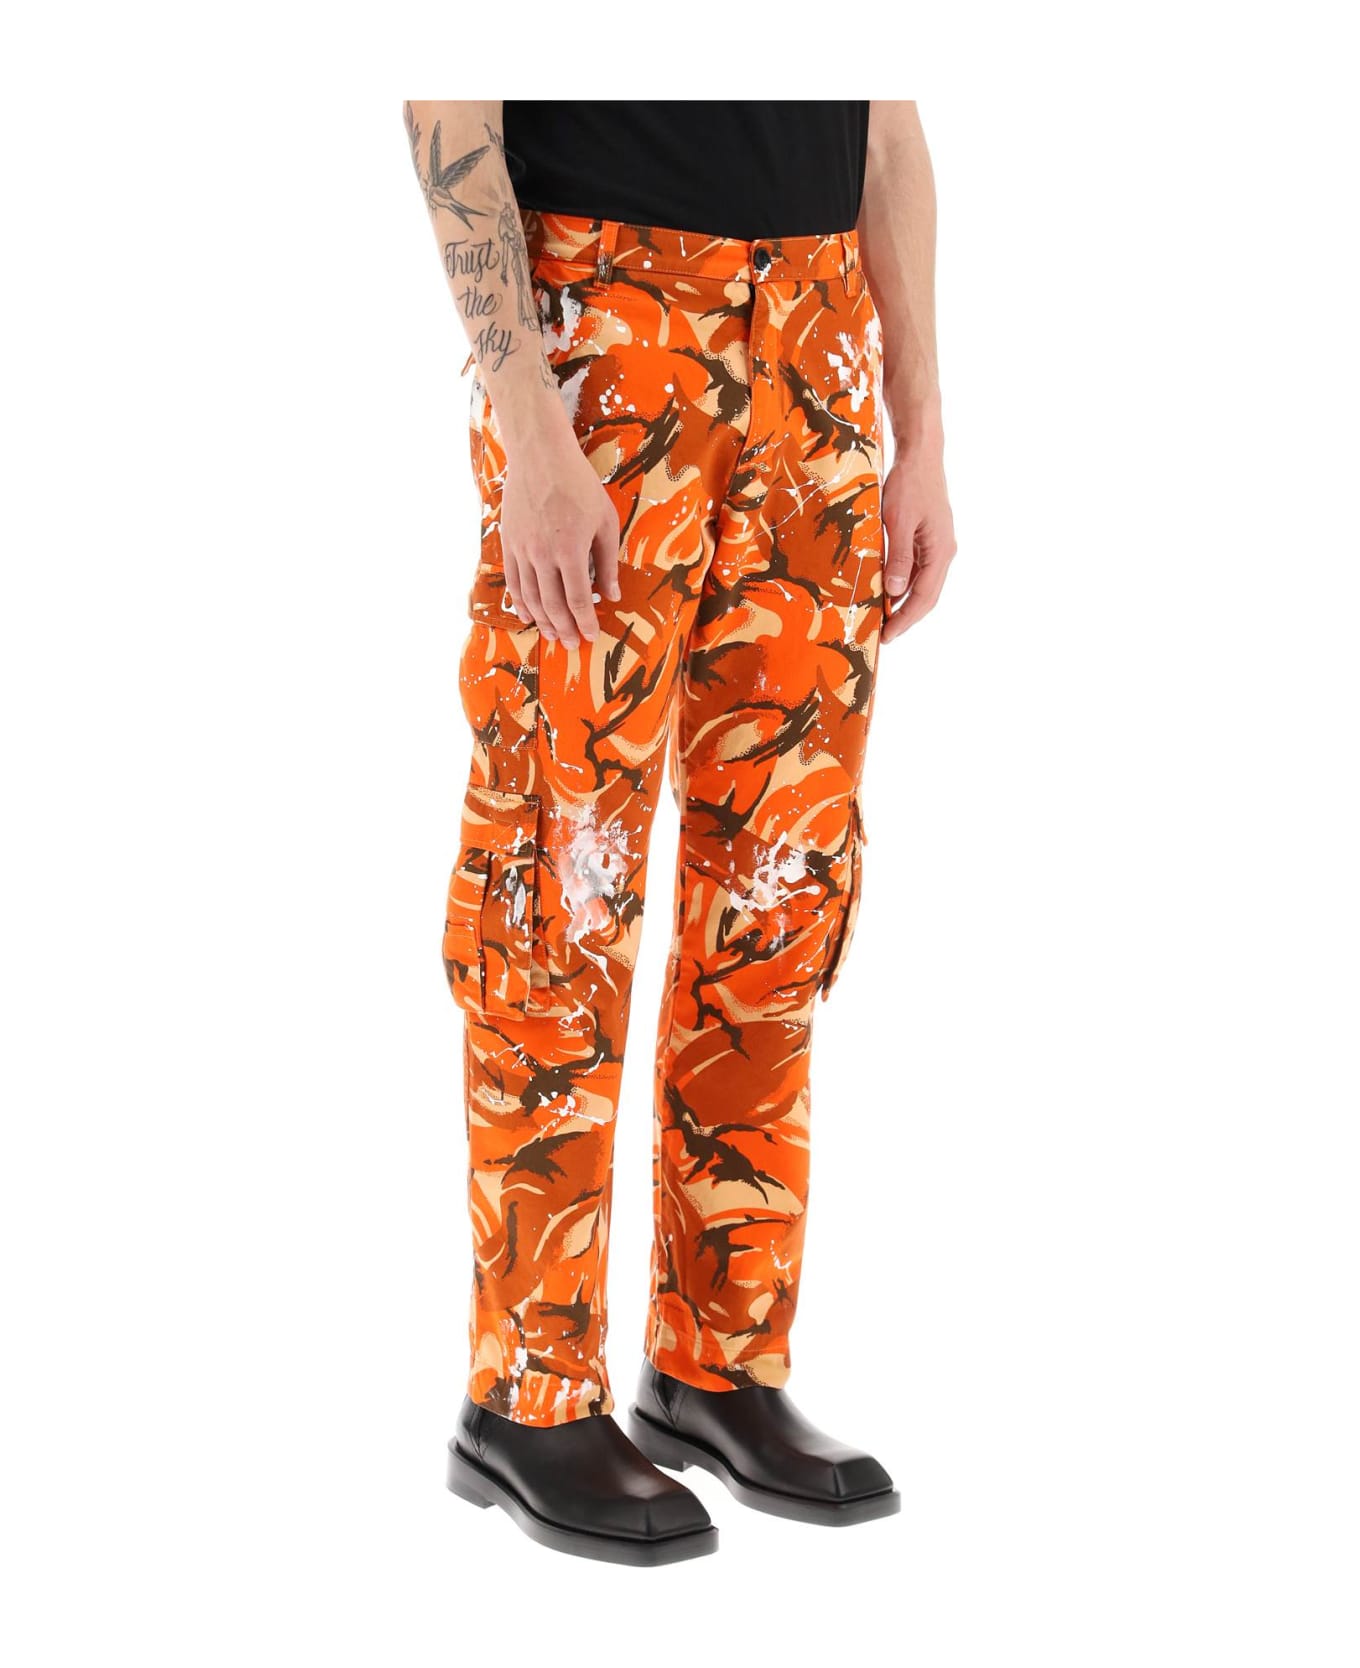 Martine Rose Camouflage Cargo Pants - ORANGE CAMO PAINT (Orange) ボトムス